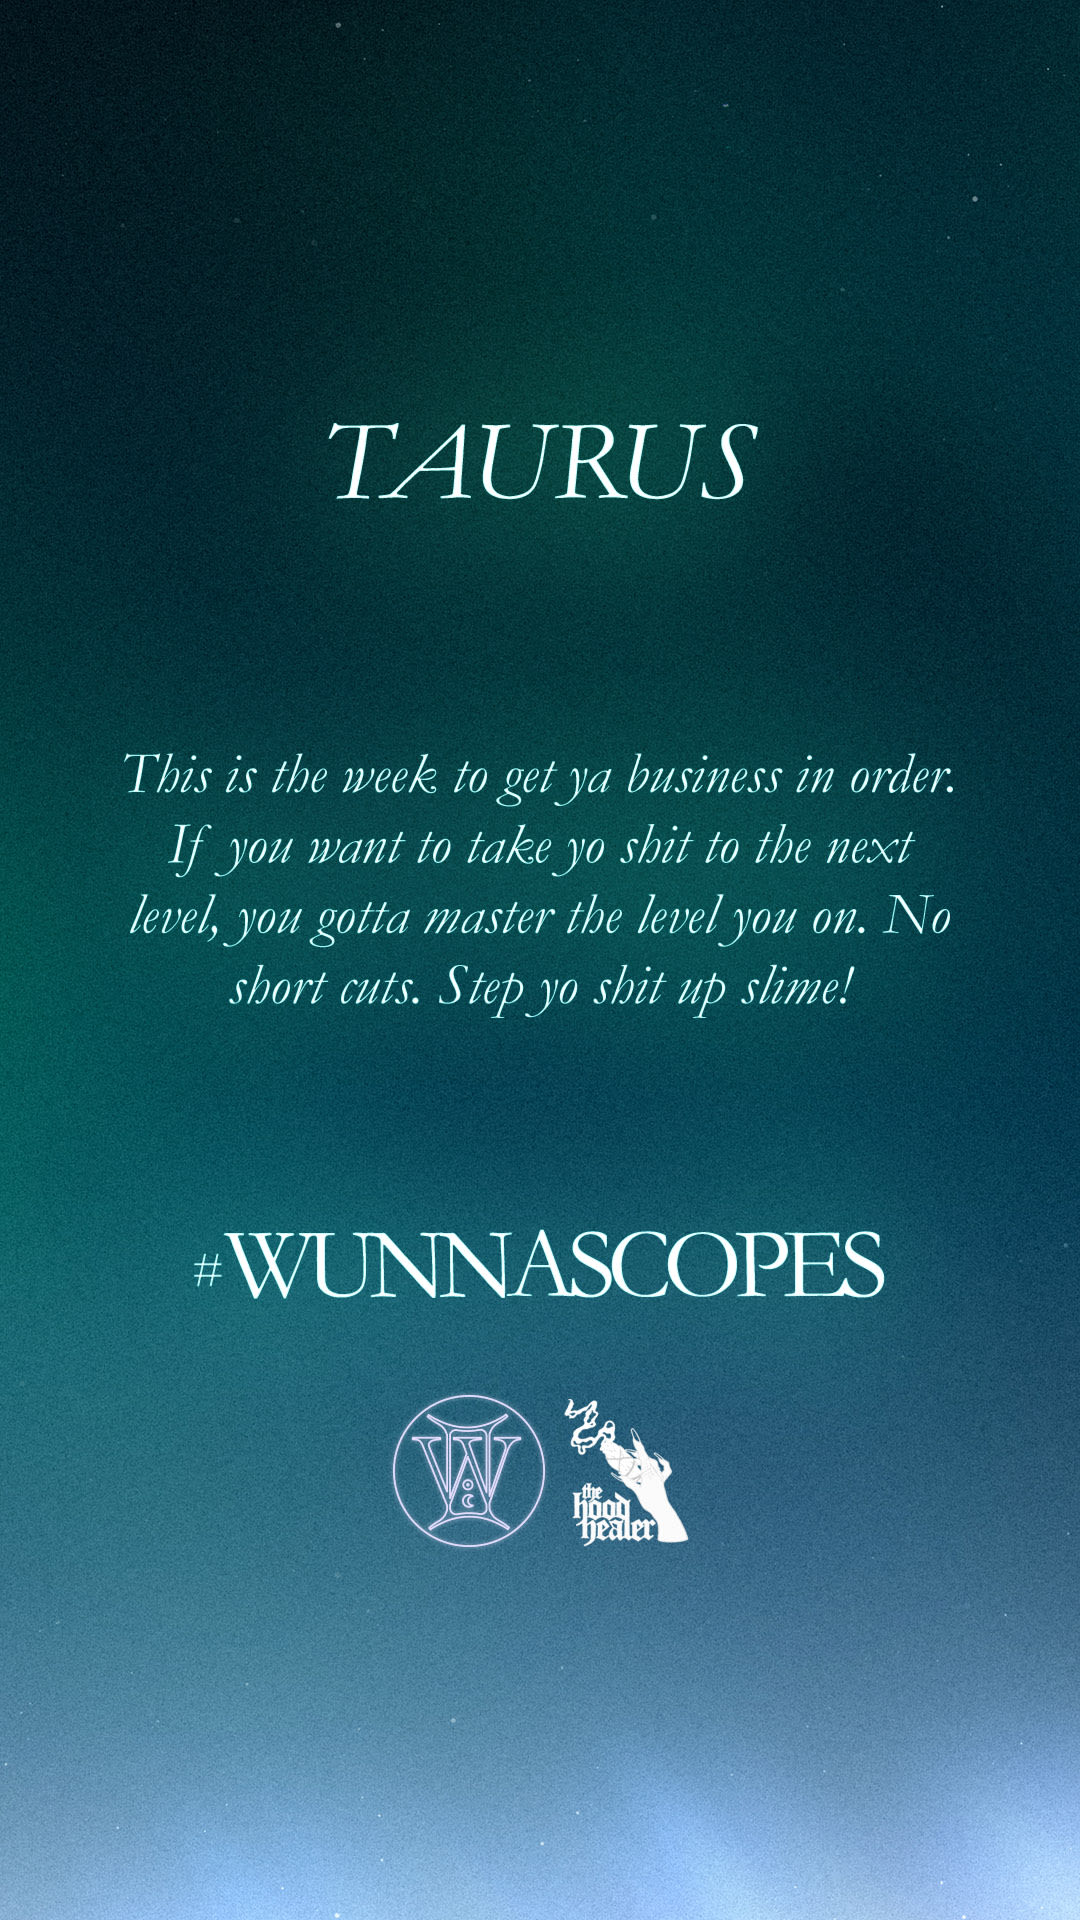 Wunnascope Taurus